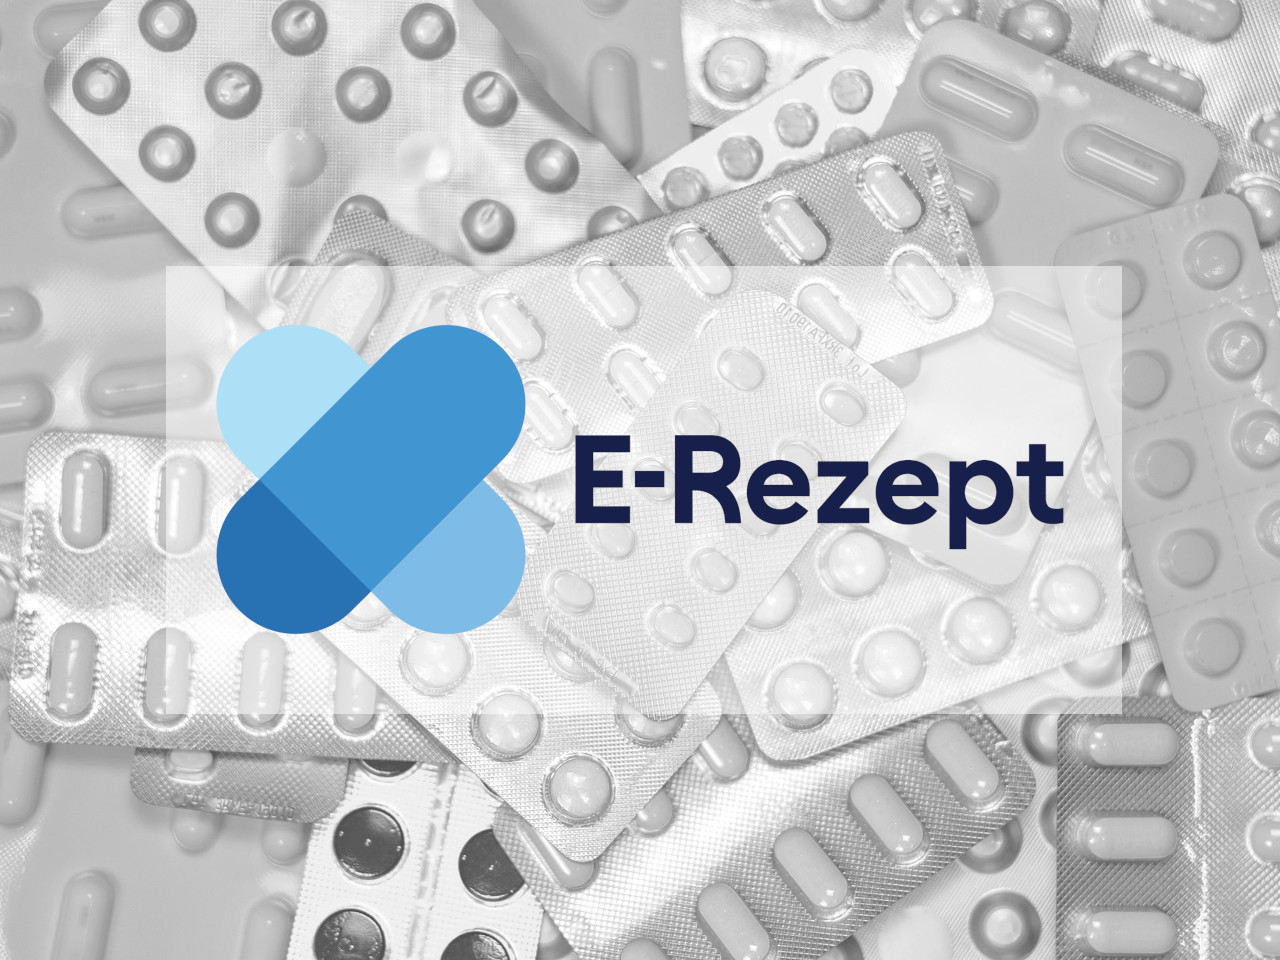 E-Rezept-Logo, Tabletten-Displays im Hintergrund